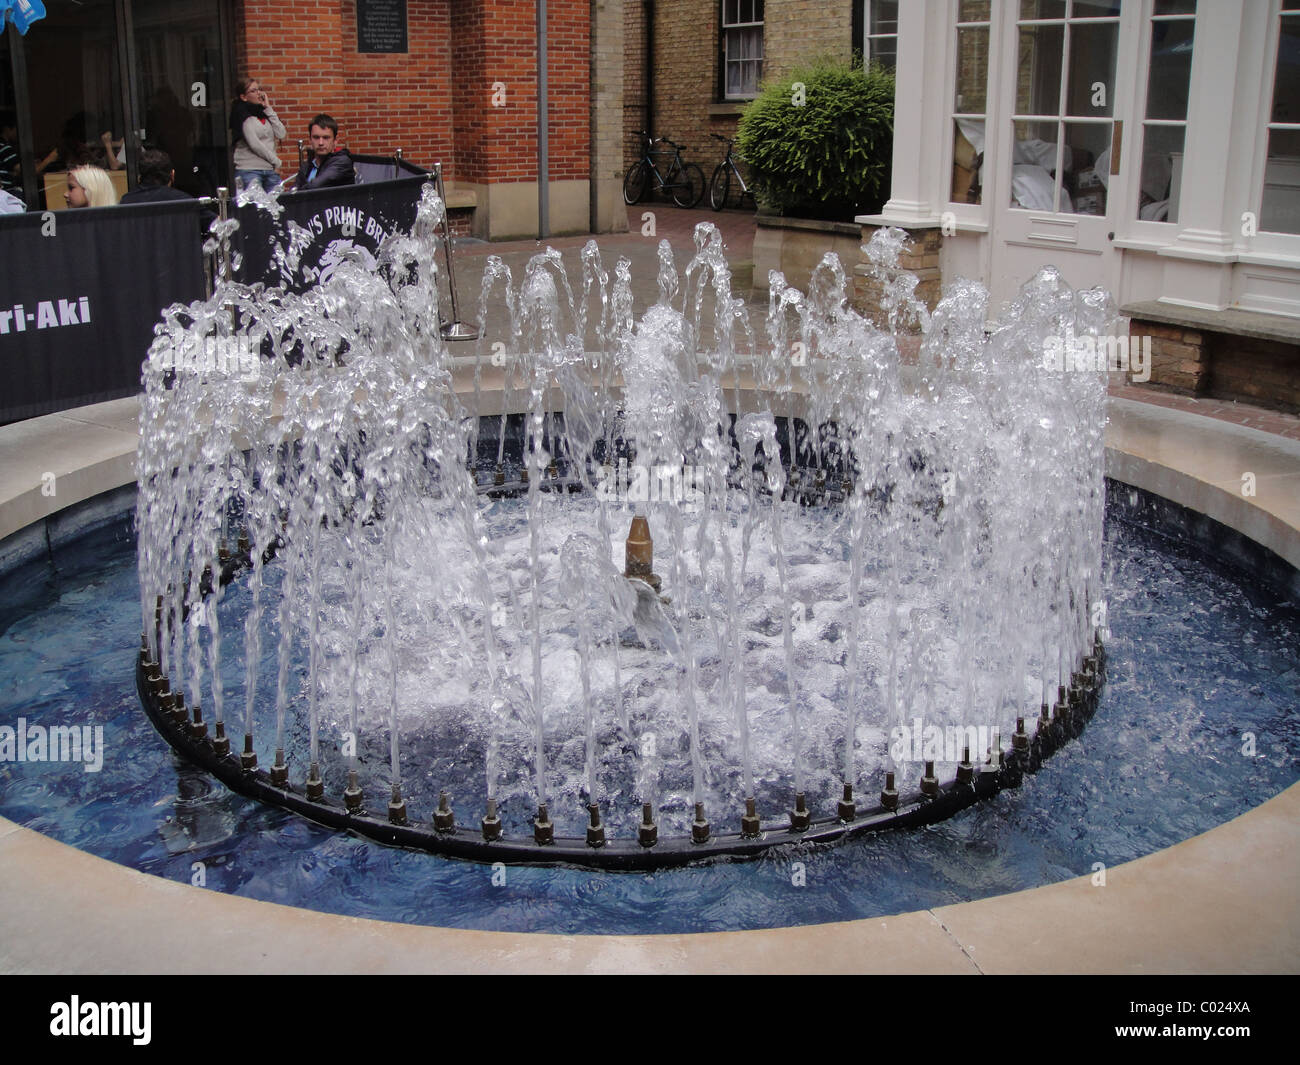 Water fountain in square in Cambridge Stock Photo